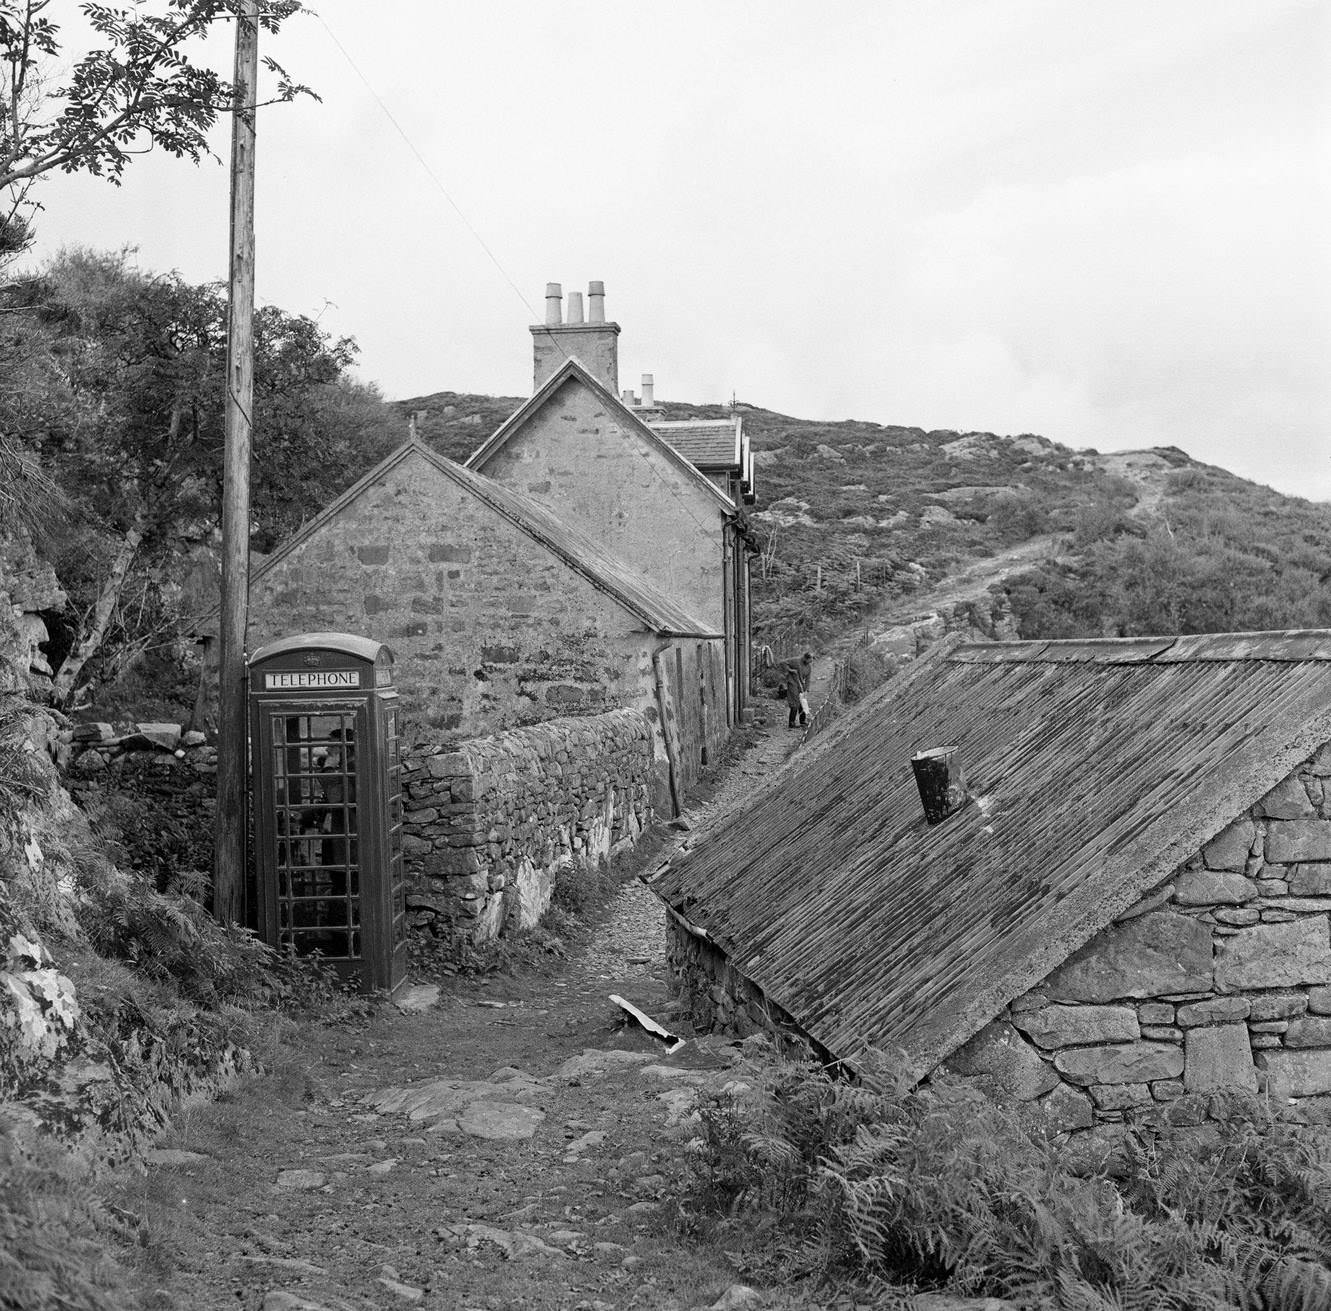 Isle of Soay, Inner Hebreides, Scotland, 18th September 1960.